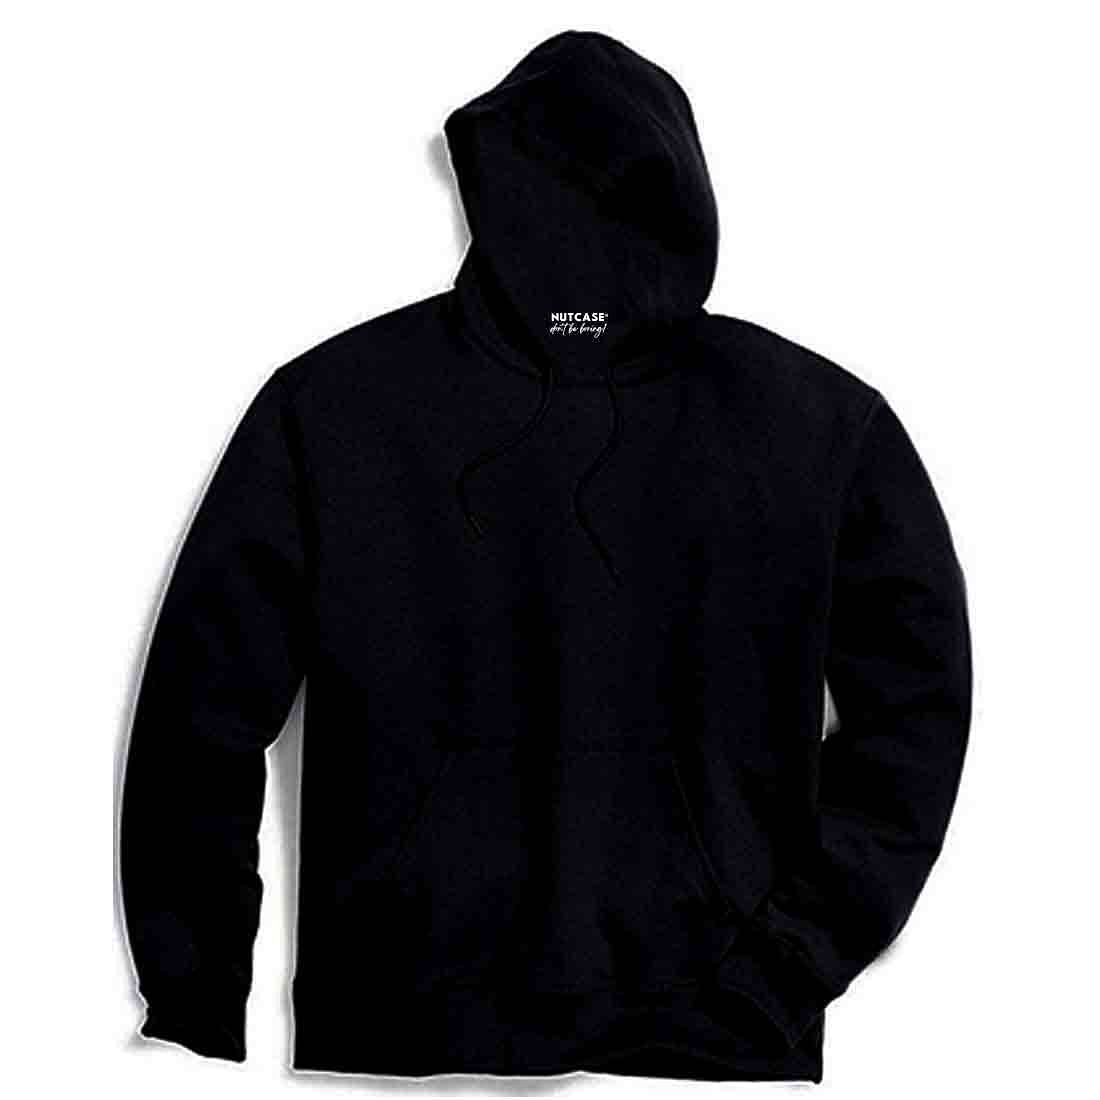 Men Zipper Sweatshirts - Buy Men Zipper Sweatshirts online in India